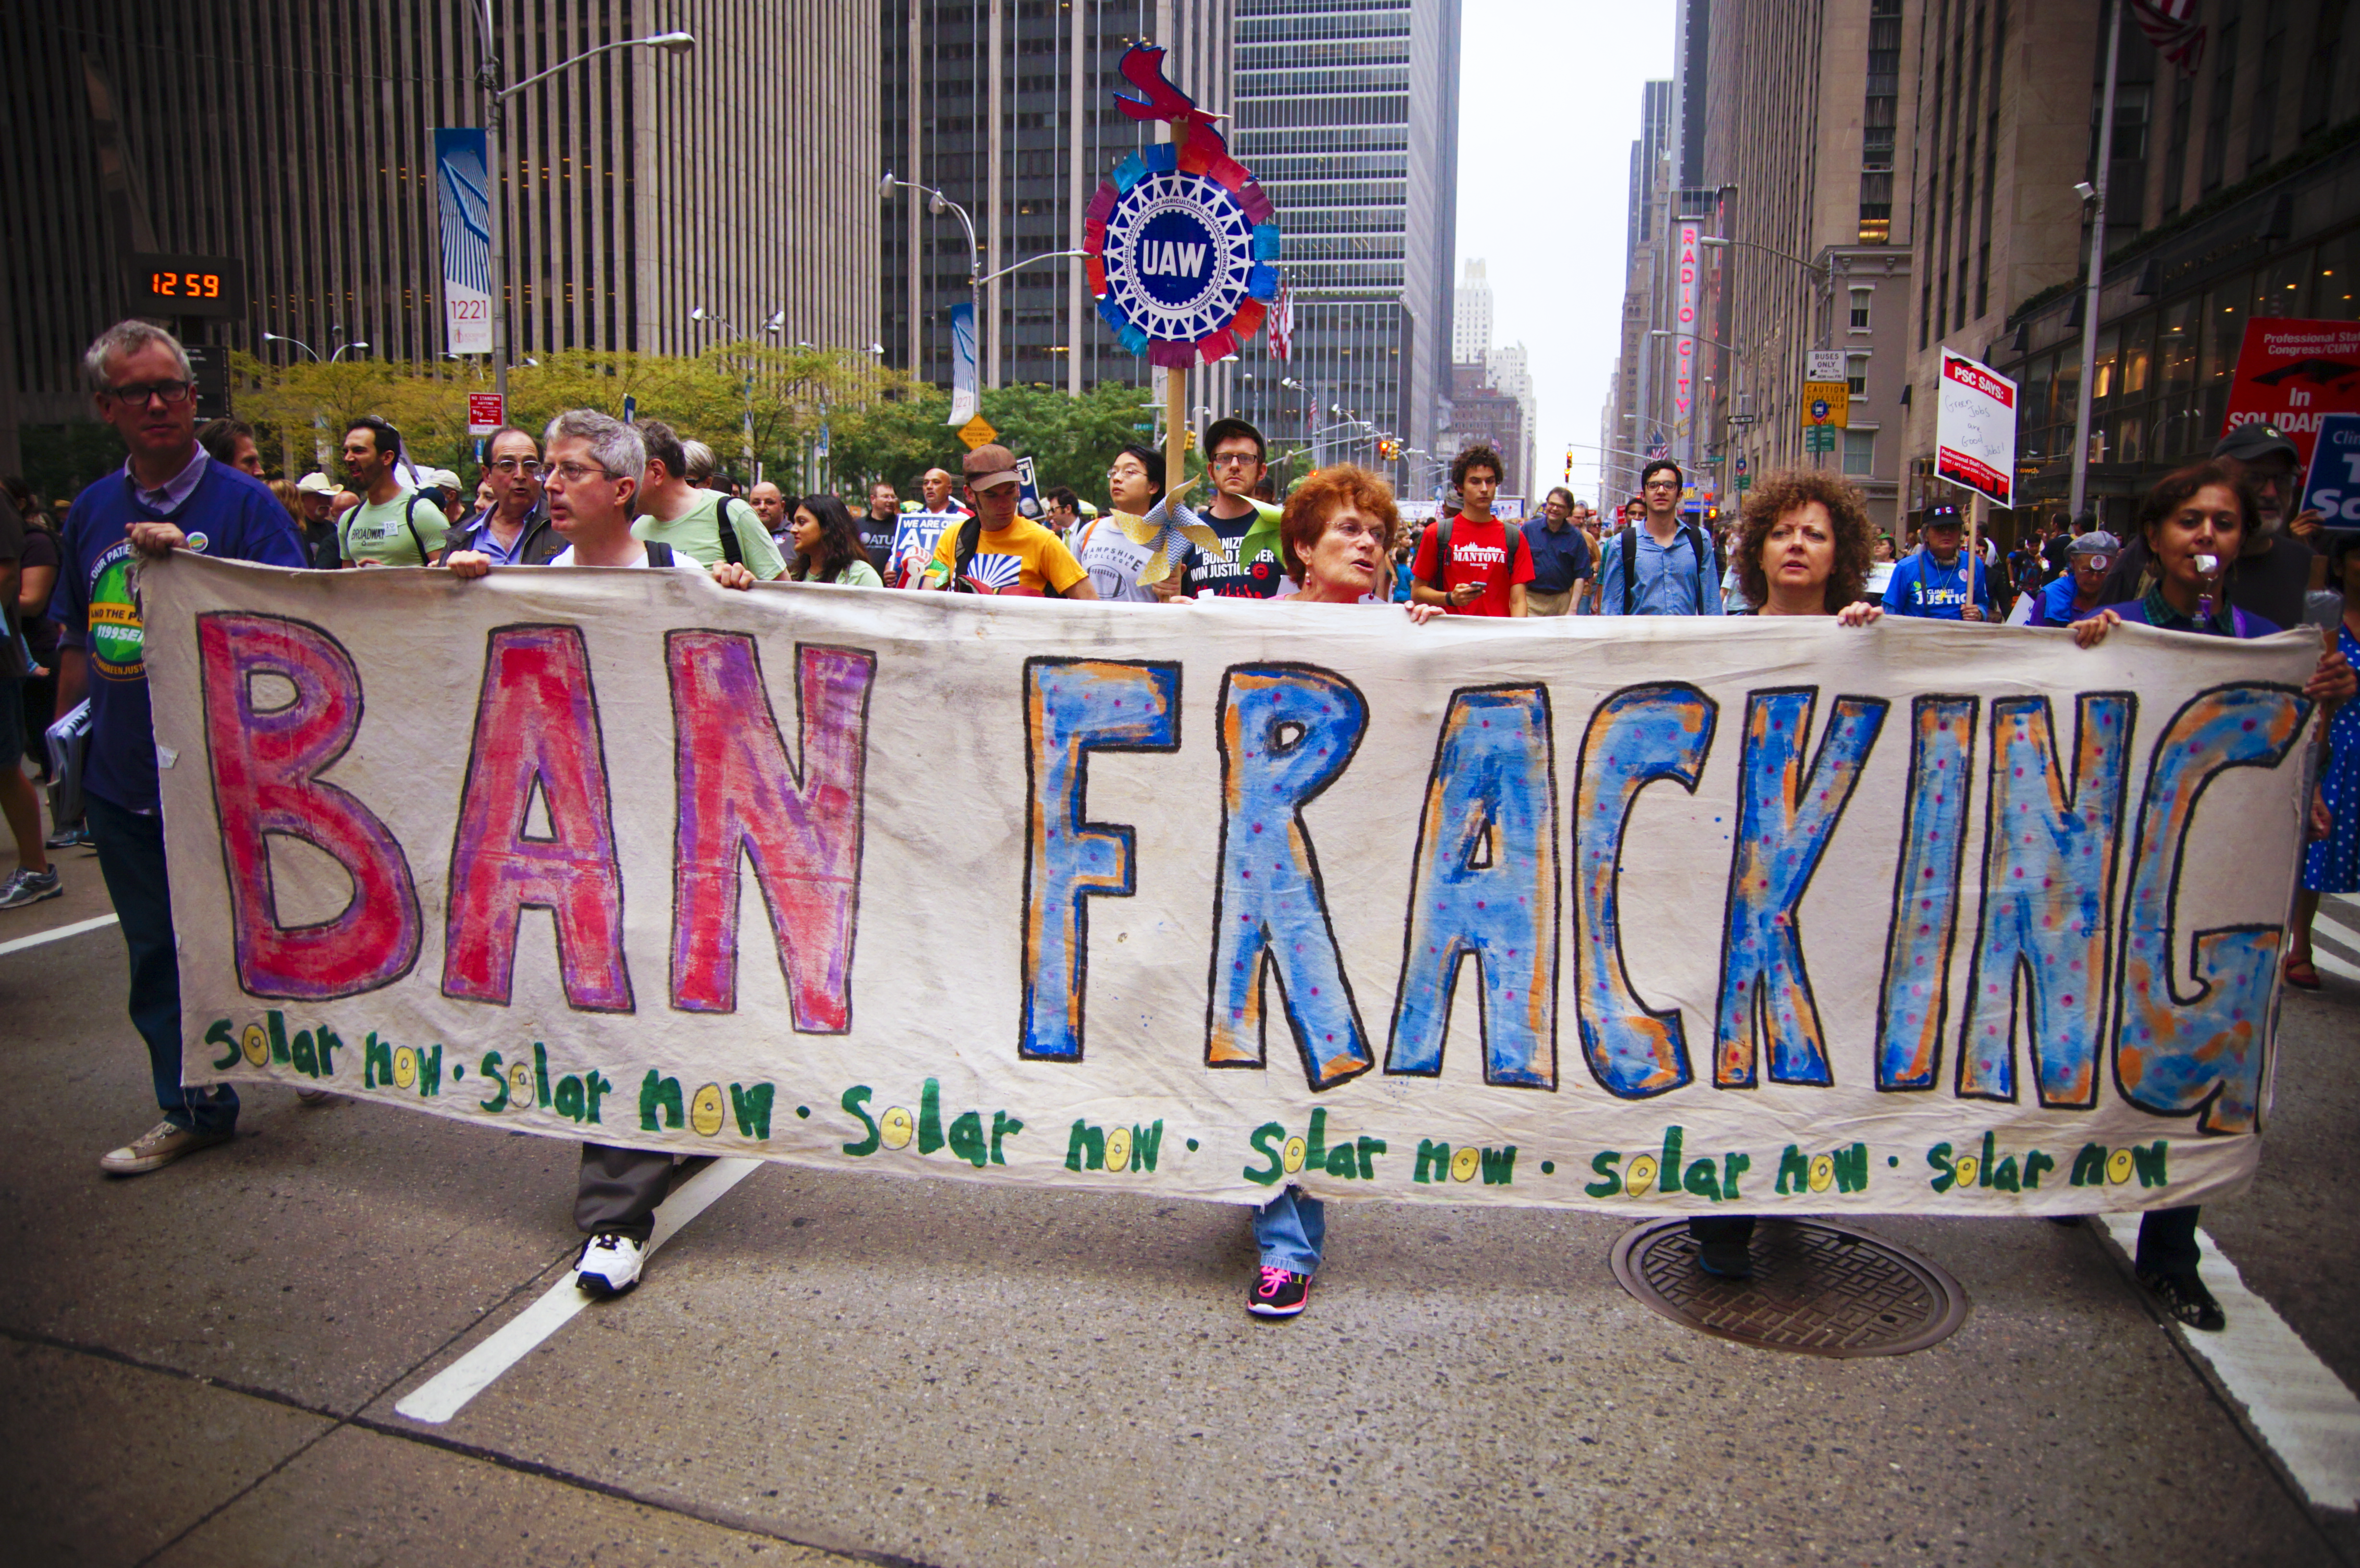 Ban fracking now